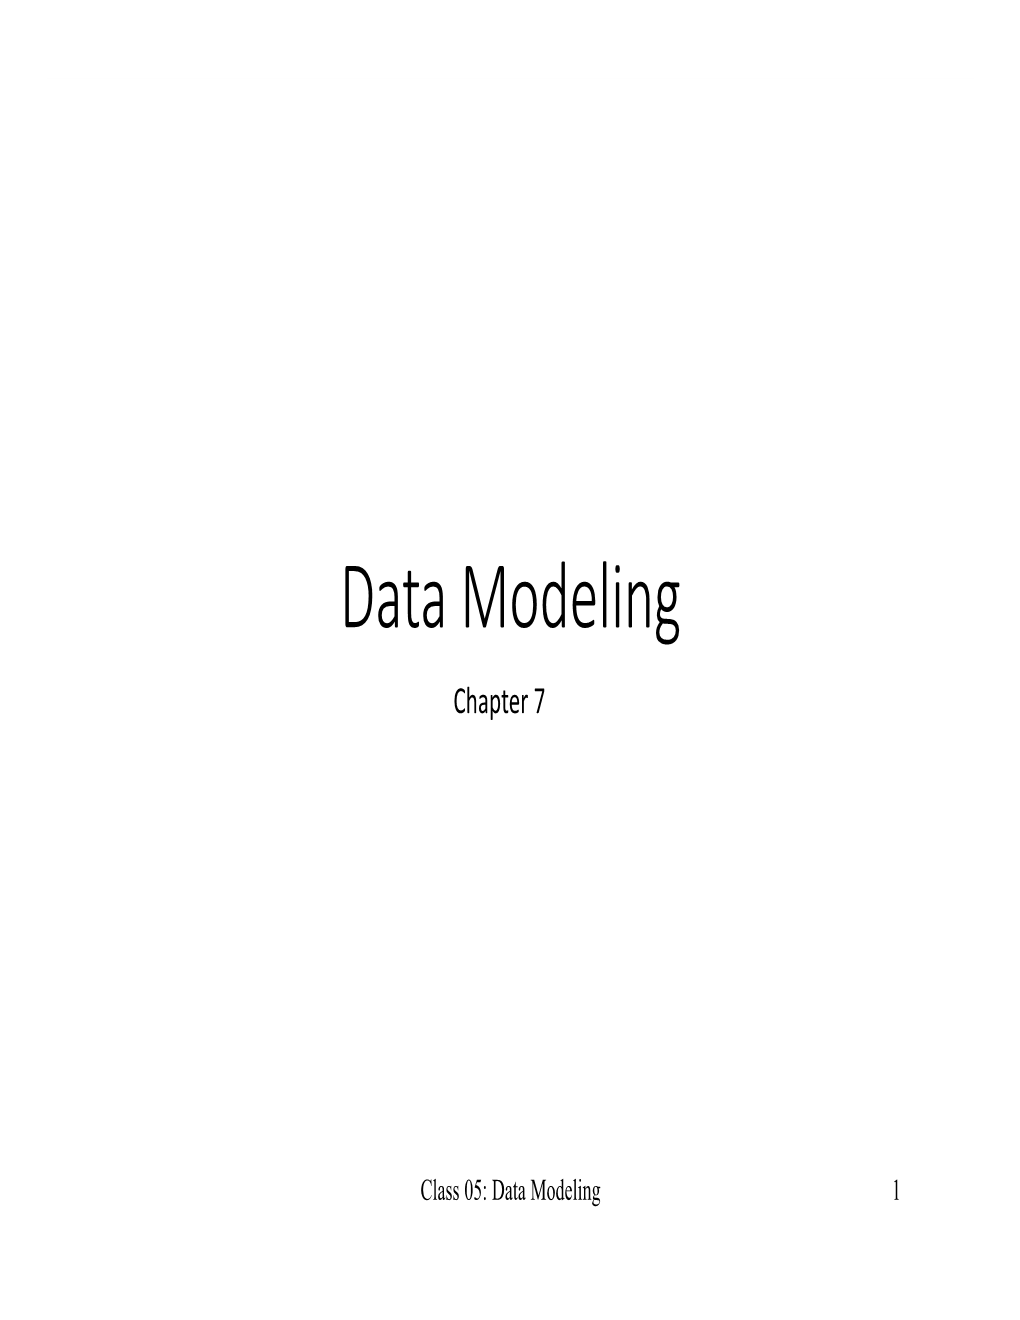 Data Modeling Chapter 7